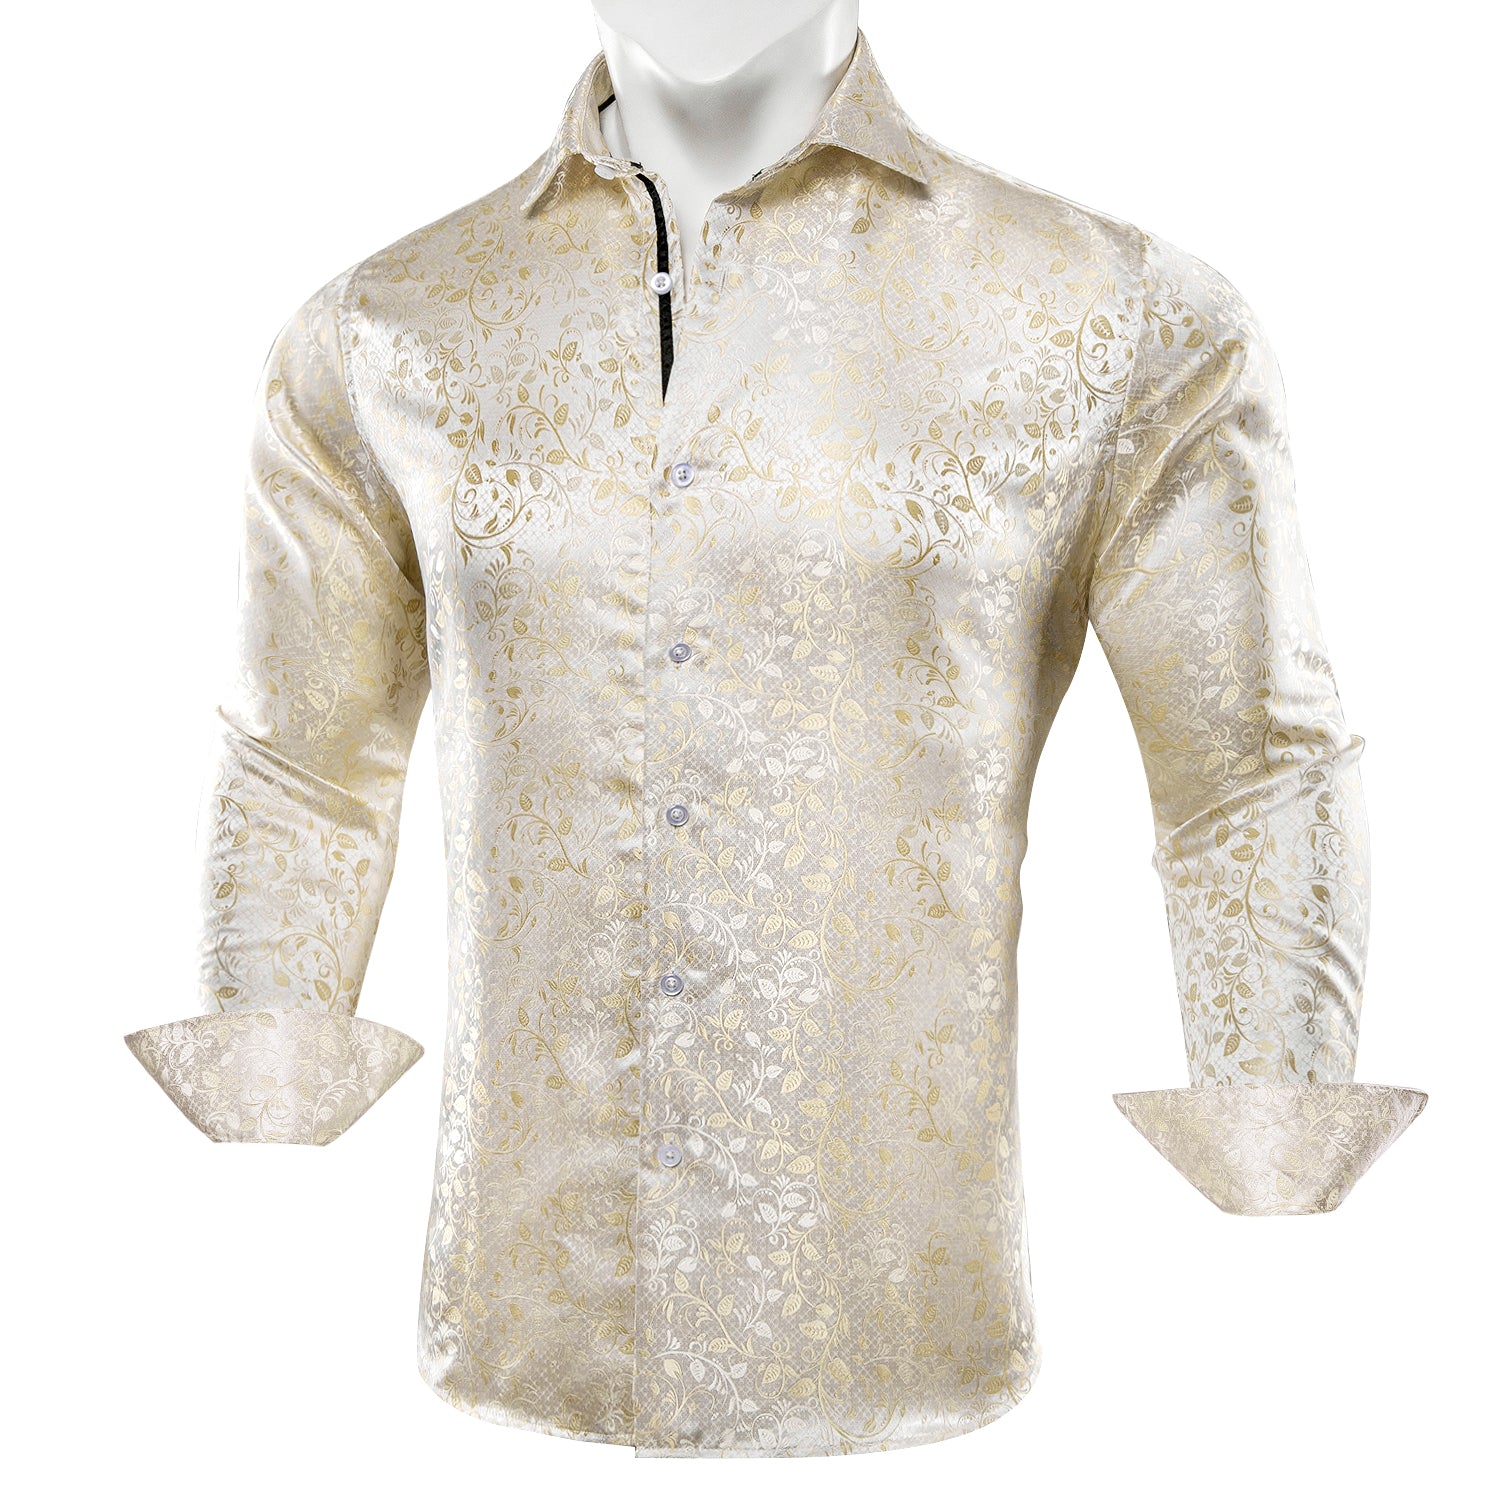 Barry.wang Button Down Shirt Men's Champagne Floral Silk Dress Shirt